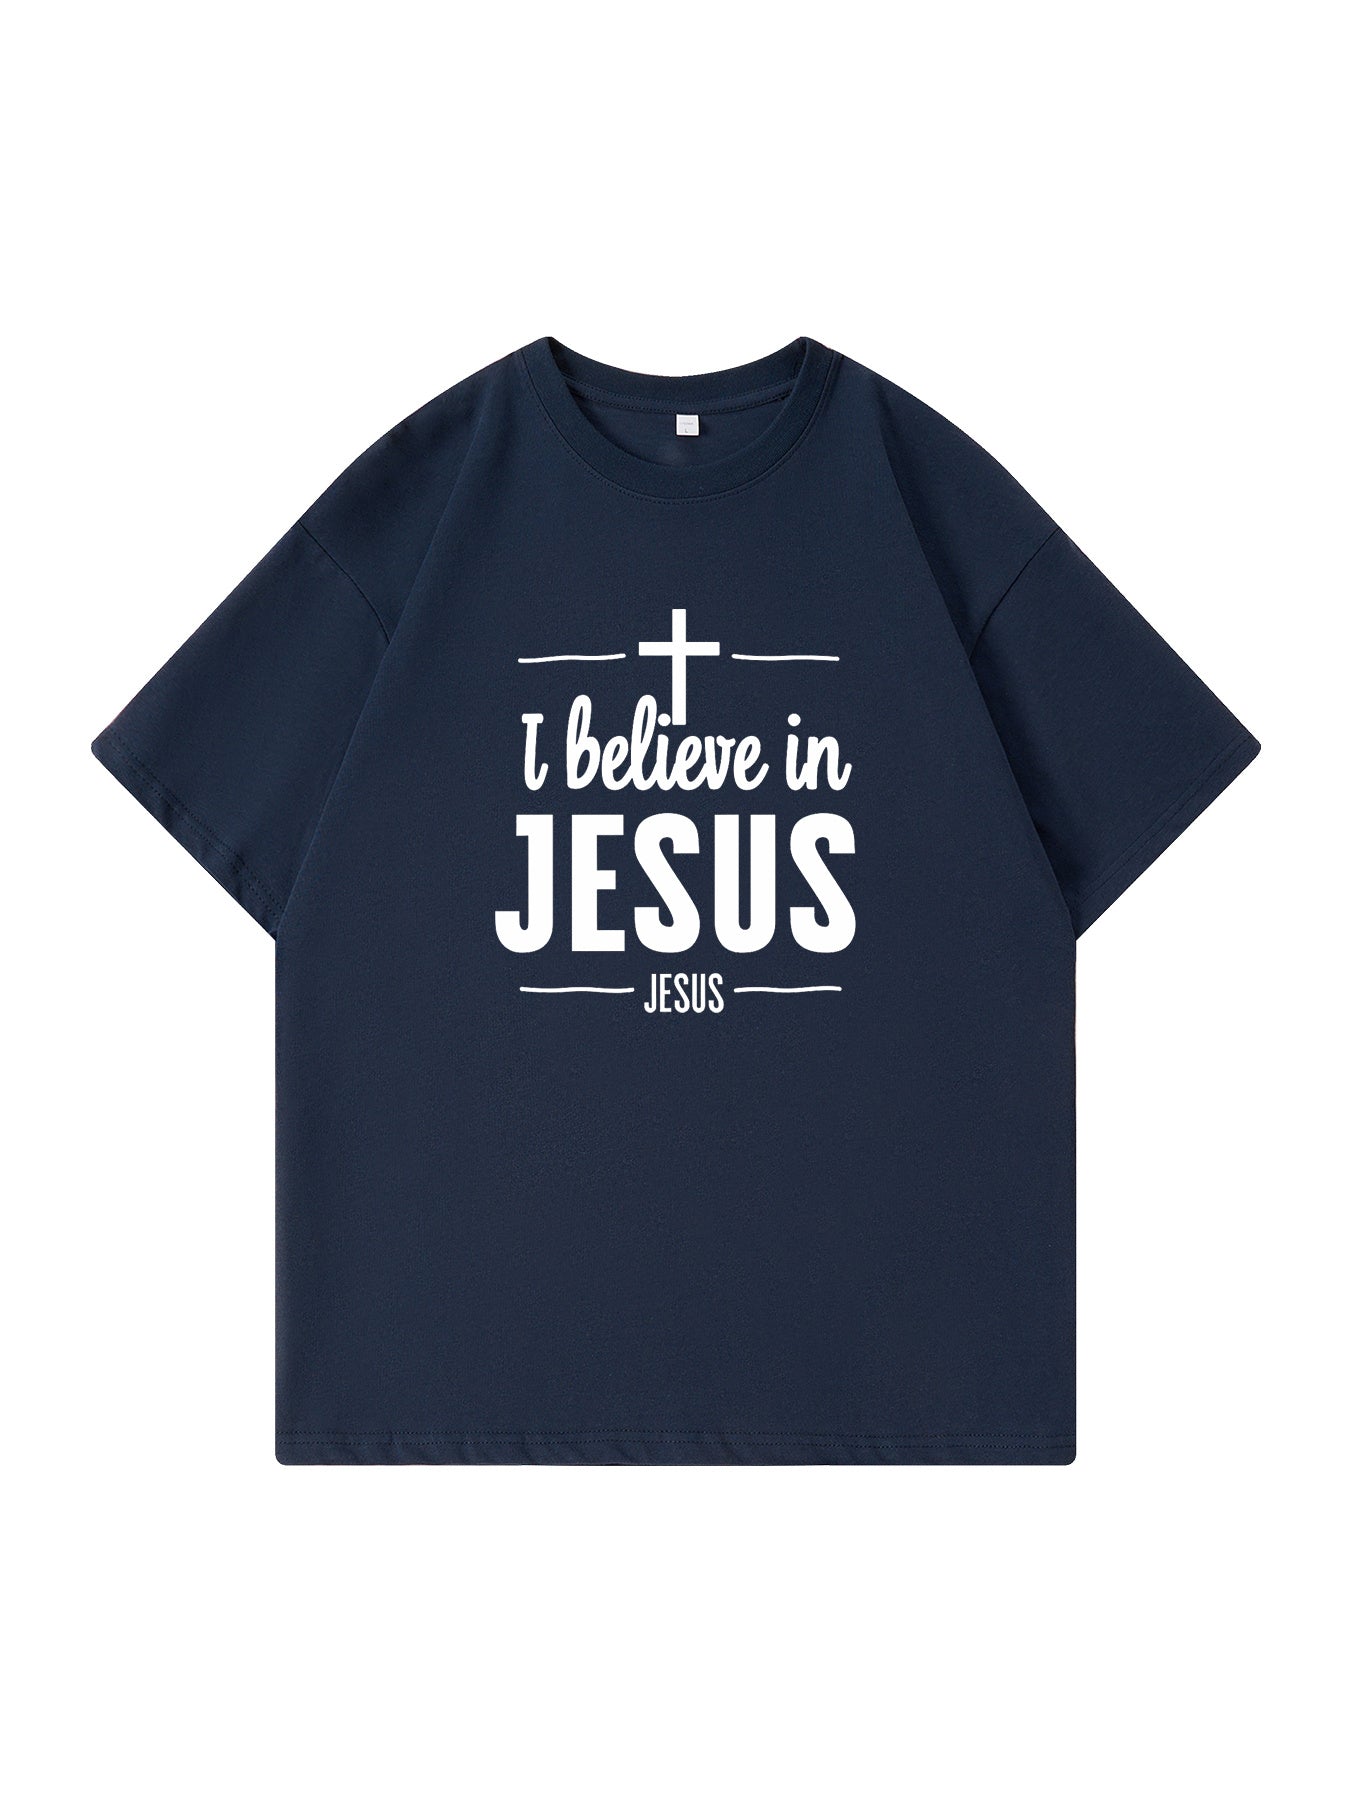 I Believe In Jesus Men's Christian T-shirt claimedbygoddesigns